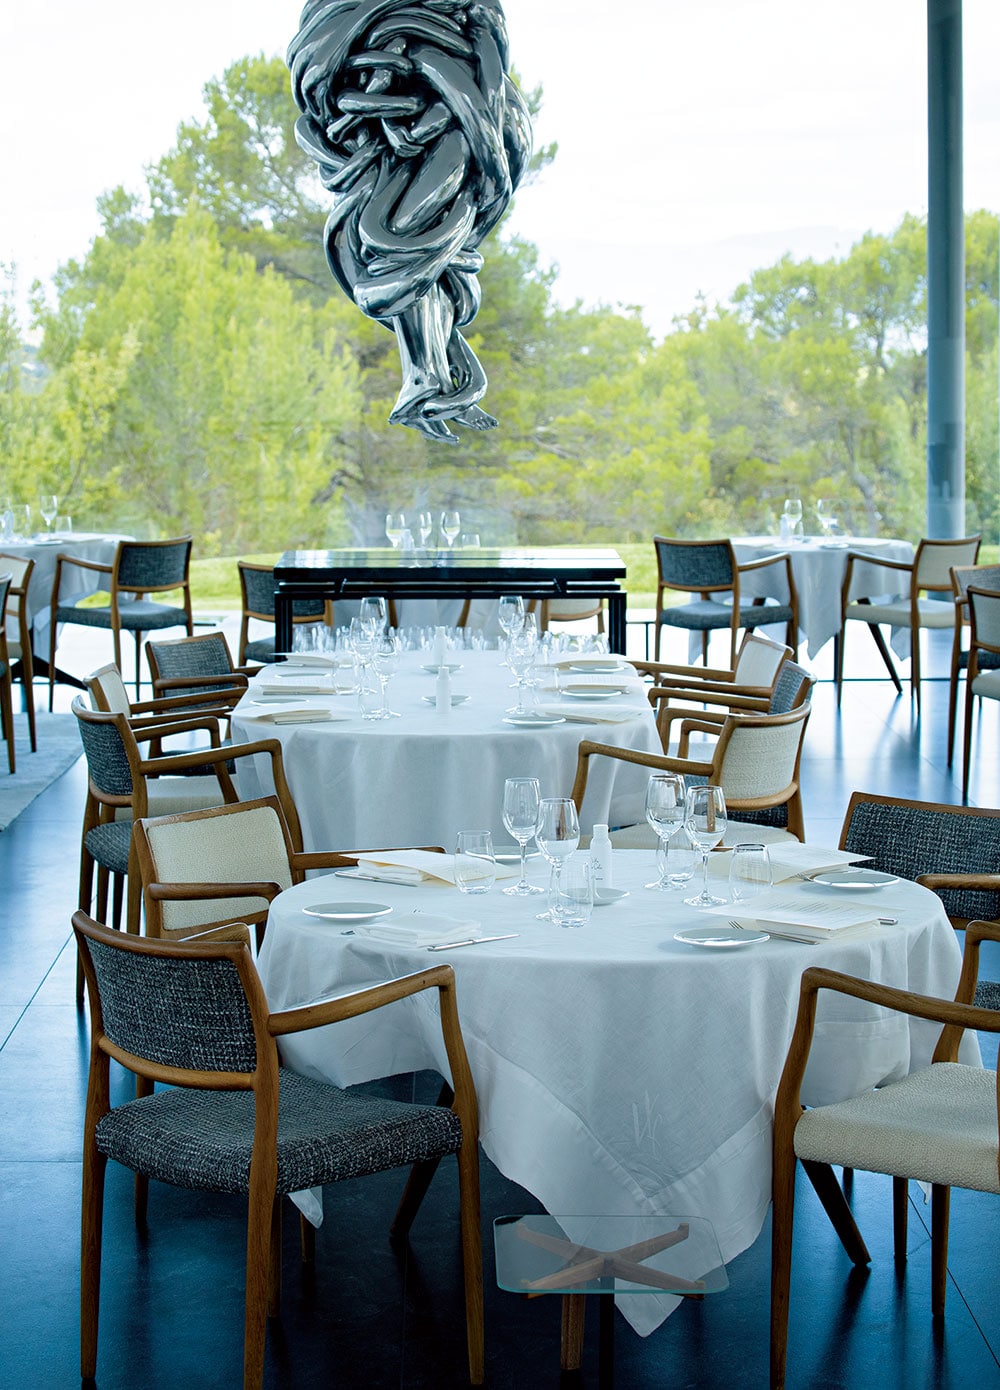 ルイーズ・ブルジョワの彫刻が中央に浮かぶホテルのレストランのメインダイニング。